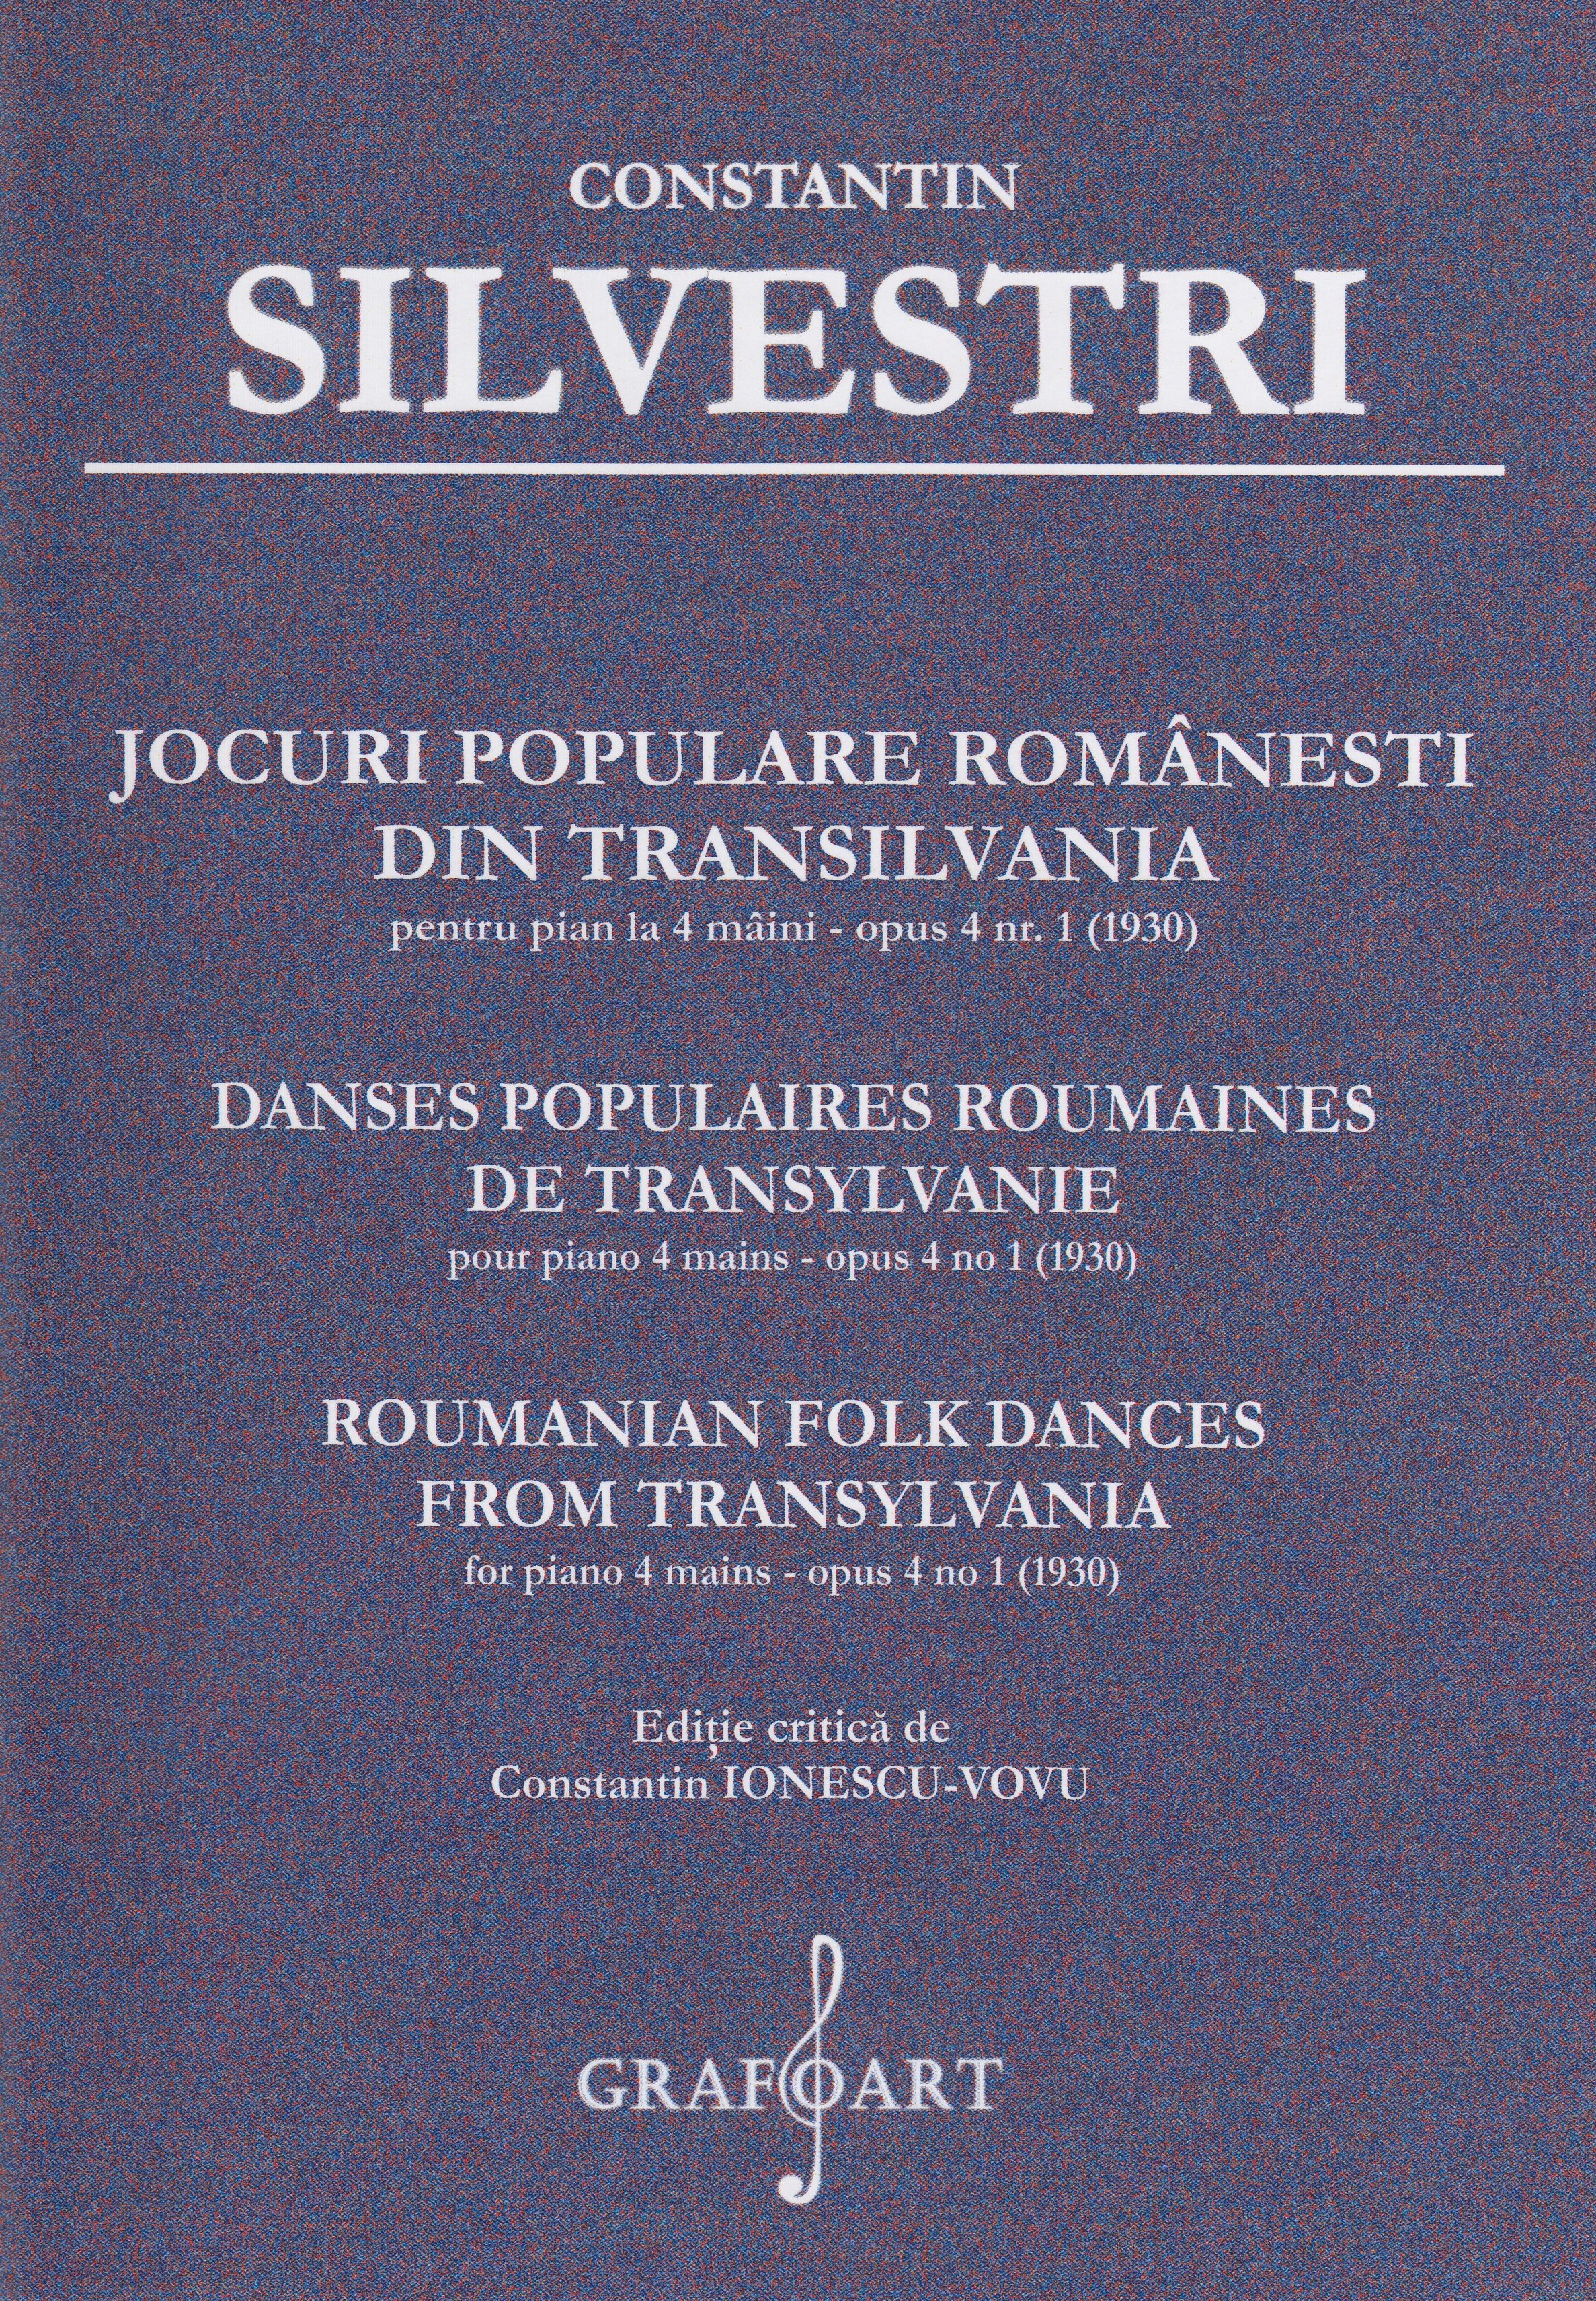 Jocuri populare romanesti din Transilvania pentru Pian la 4 maini Opus 4 Nr.1 - Constantin Silvestri